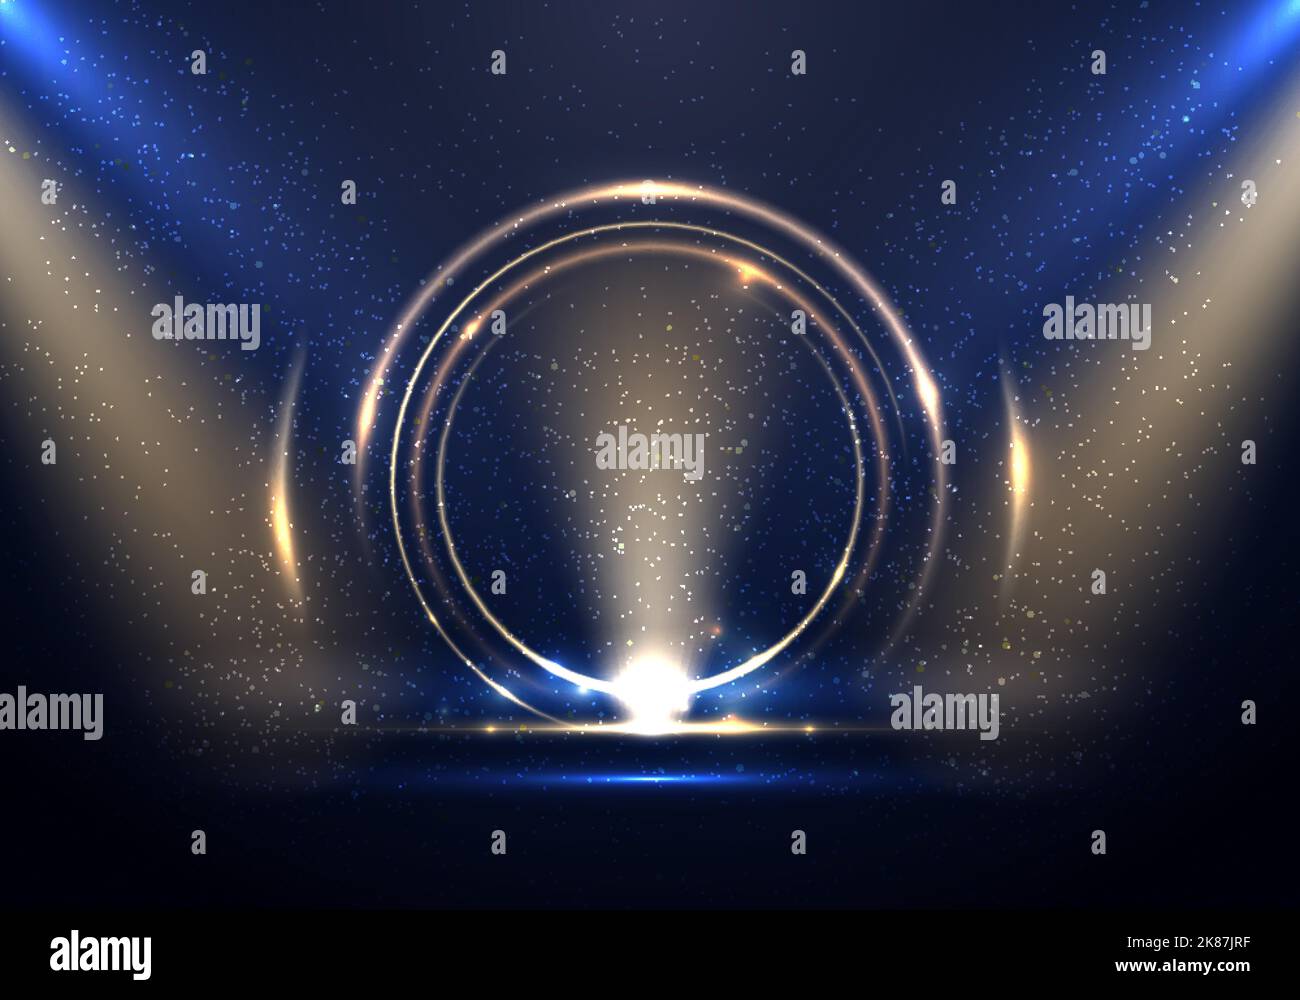 Abstrait cercle doré lumière effet toile de fond avec un spot sur fond bleu scène. Vous pouvez l'utiliser pour les fêtes, les expositions, les exh Illustration de Vecteur